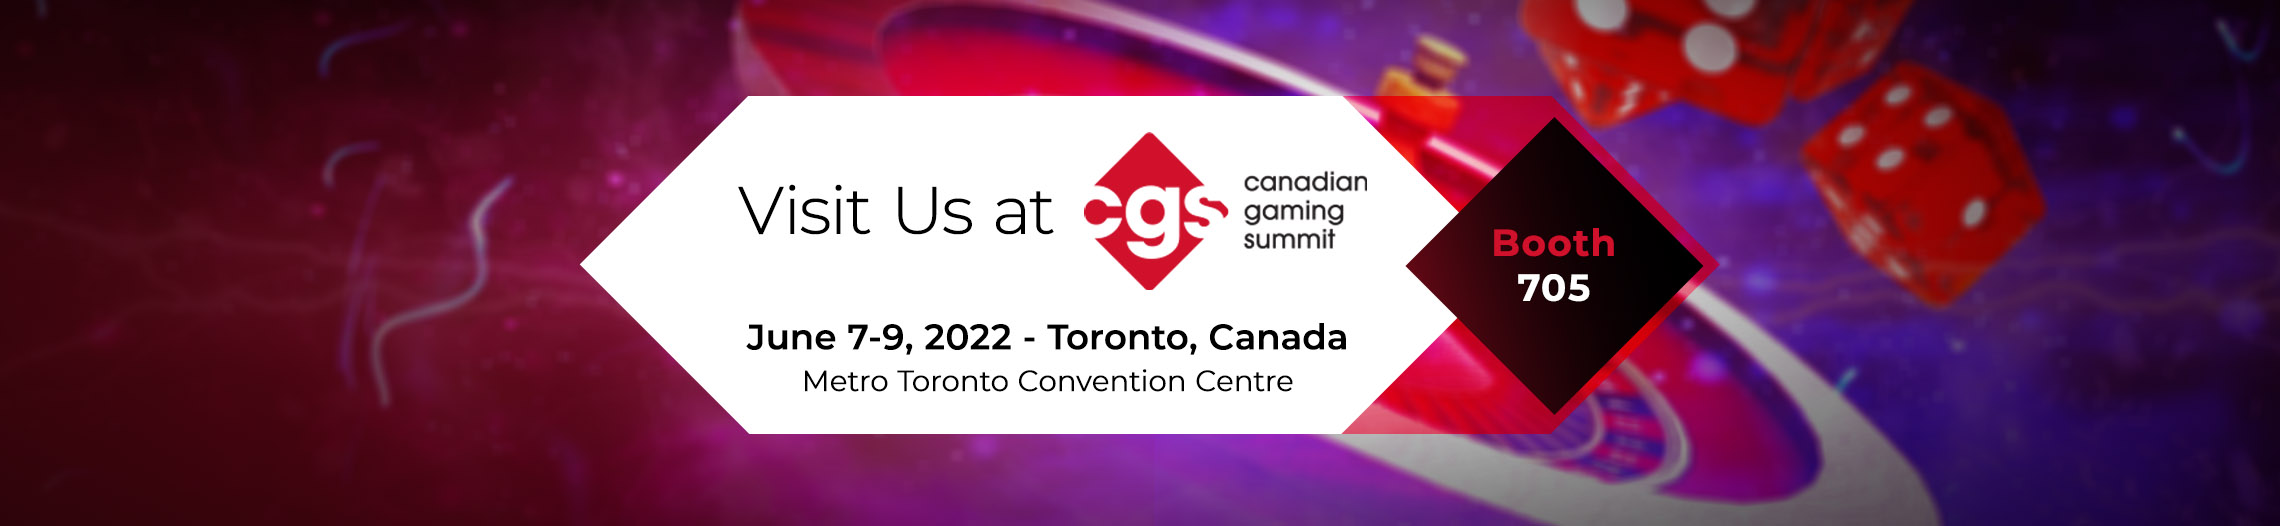 Visit us at the Canadian Gaming Summit!